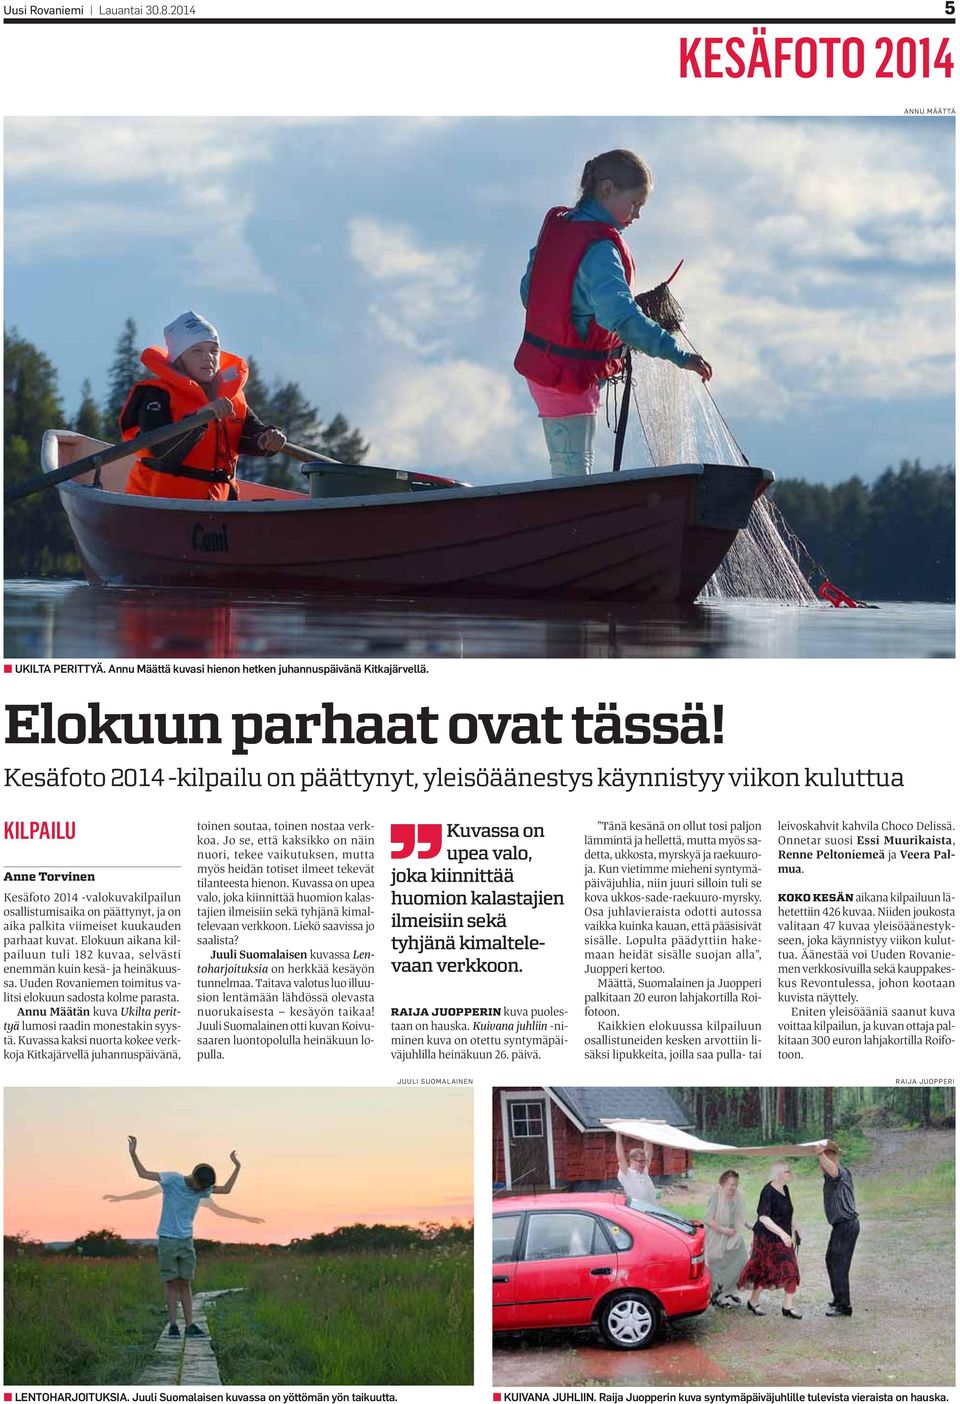 kuukauden parhaat kuvat. Elokuun aikana kilpailuun tuli 182 kuvaa, selvästi enemmän kuin kesä- ja heinäkuussa. Uuden Rovaniemen toimitus valitsi elokuun sadosta kolme parasta.